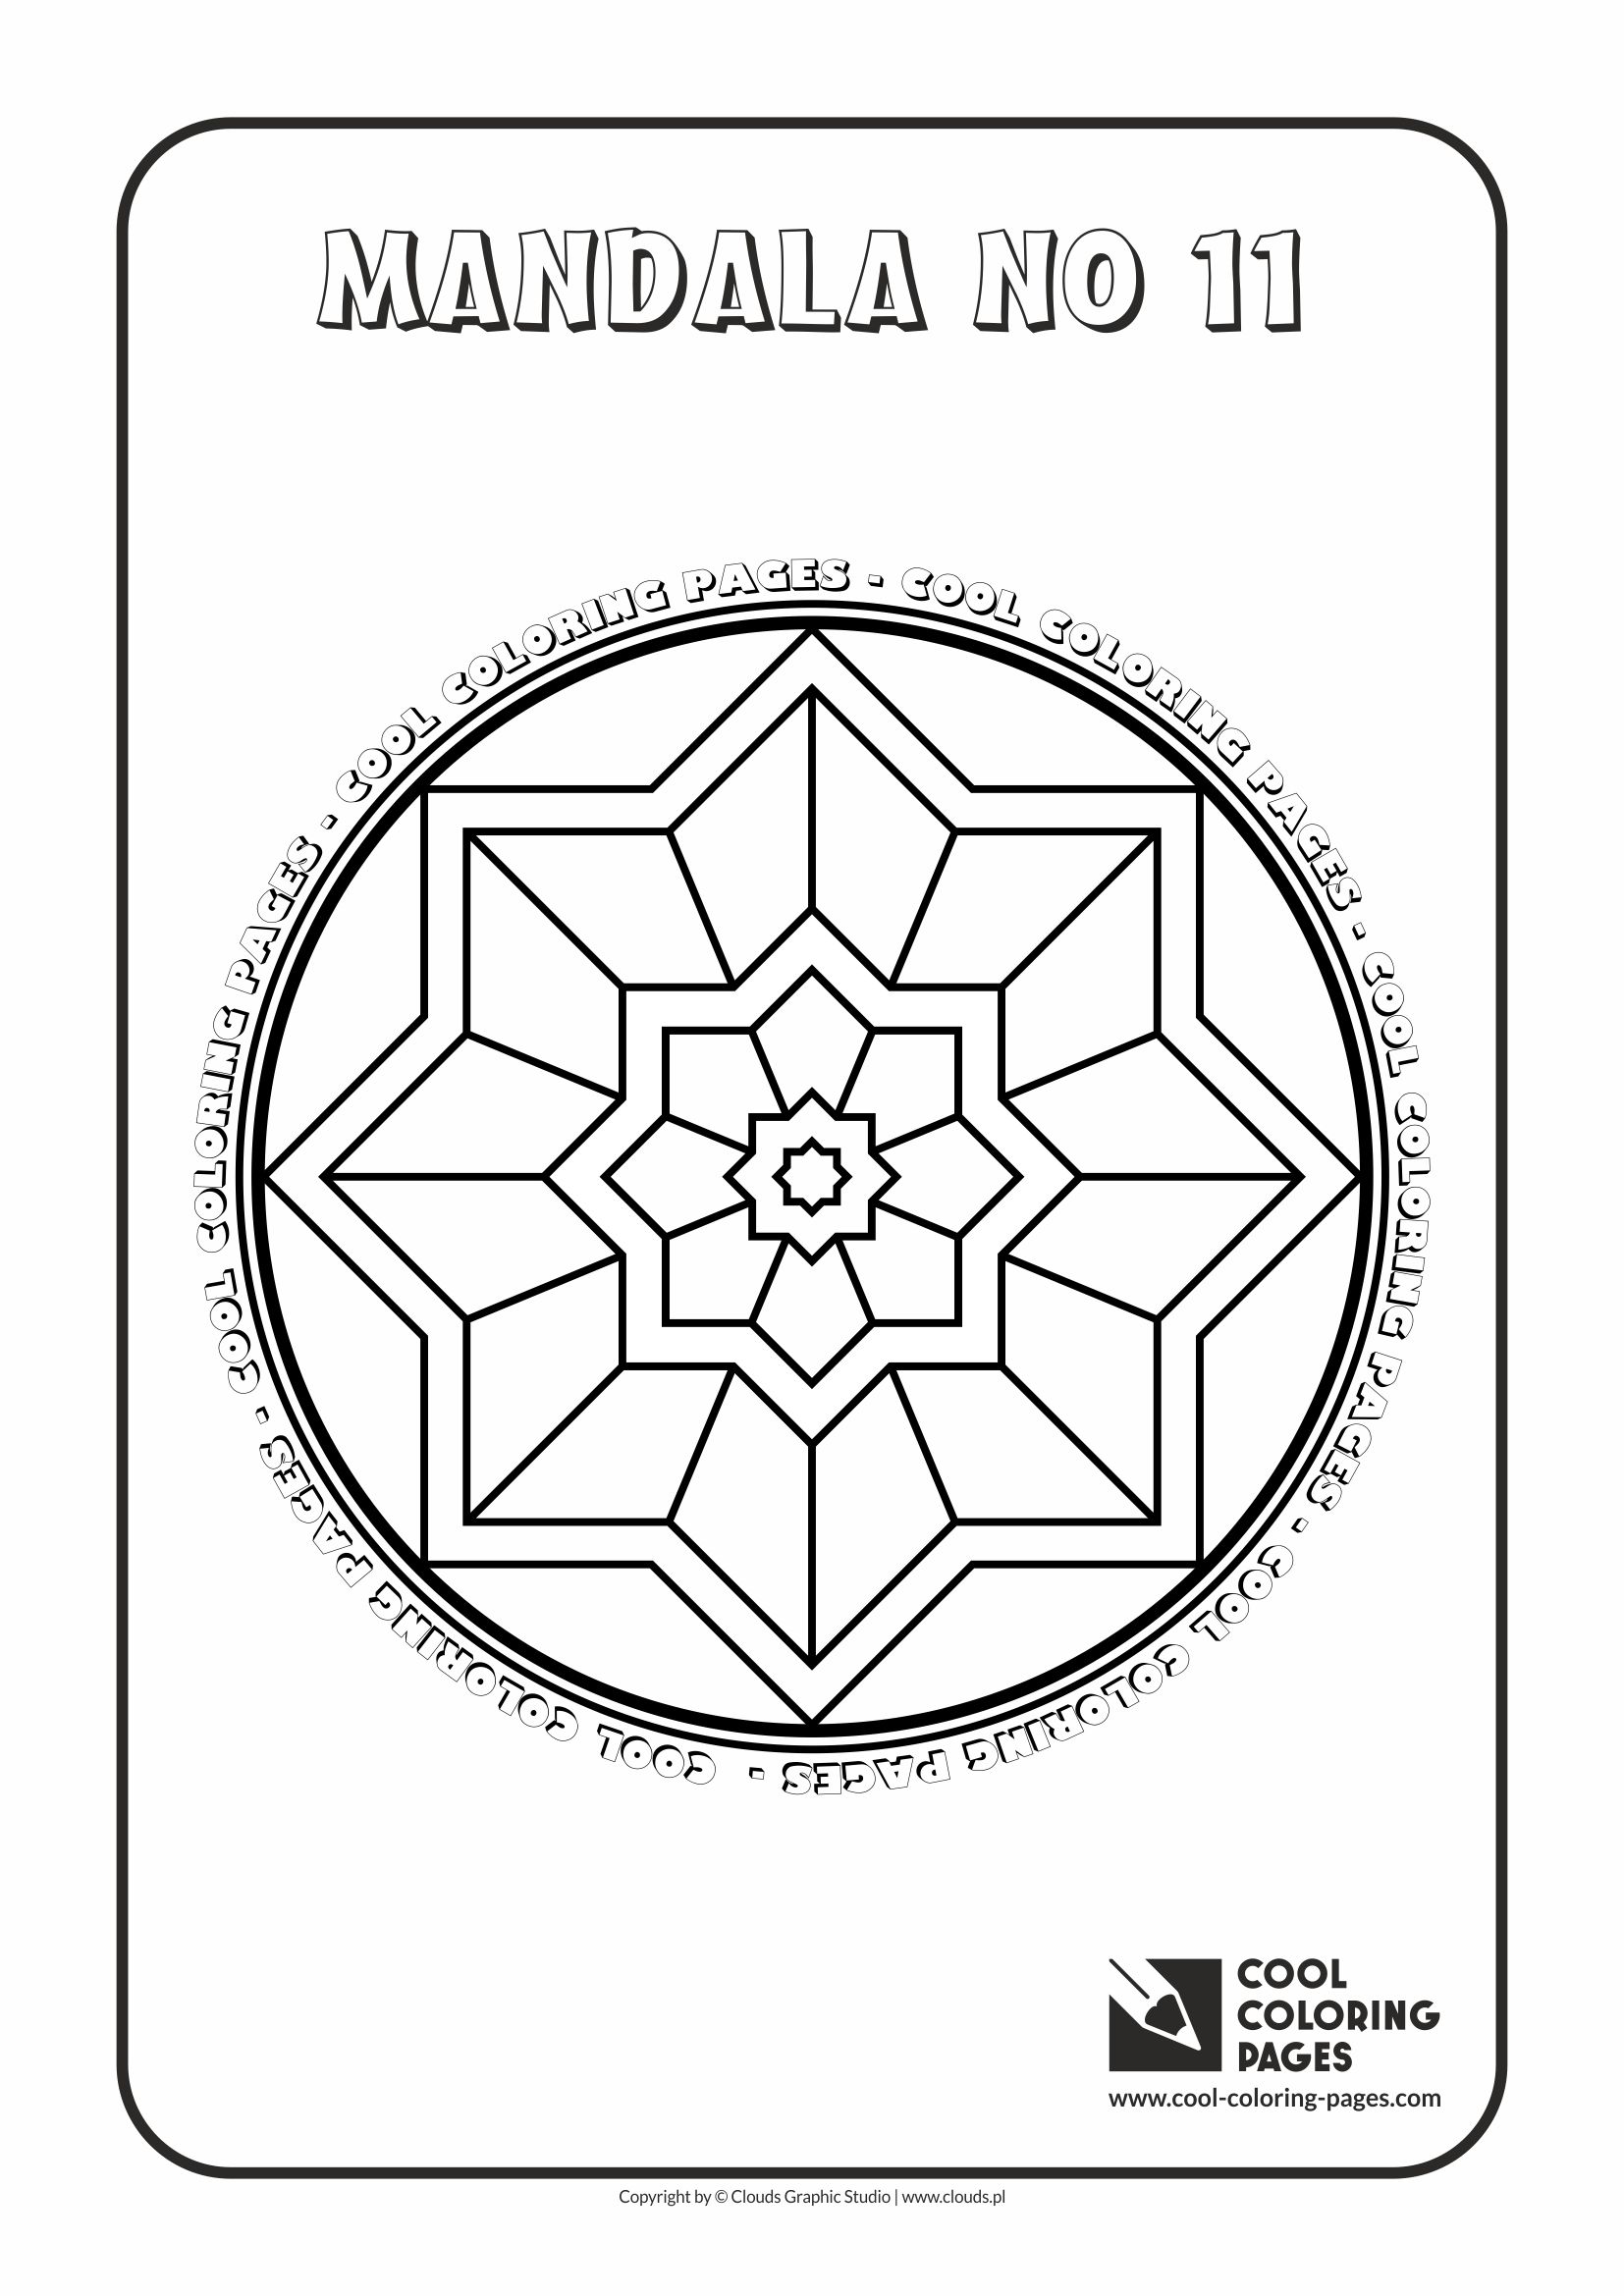 Cool Coloring Pages - Mandalas / Mandala no 11